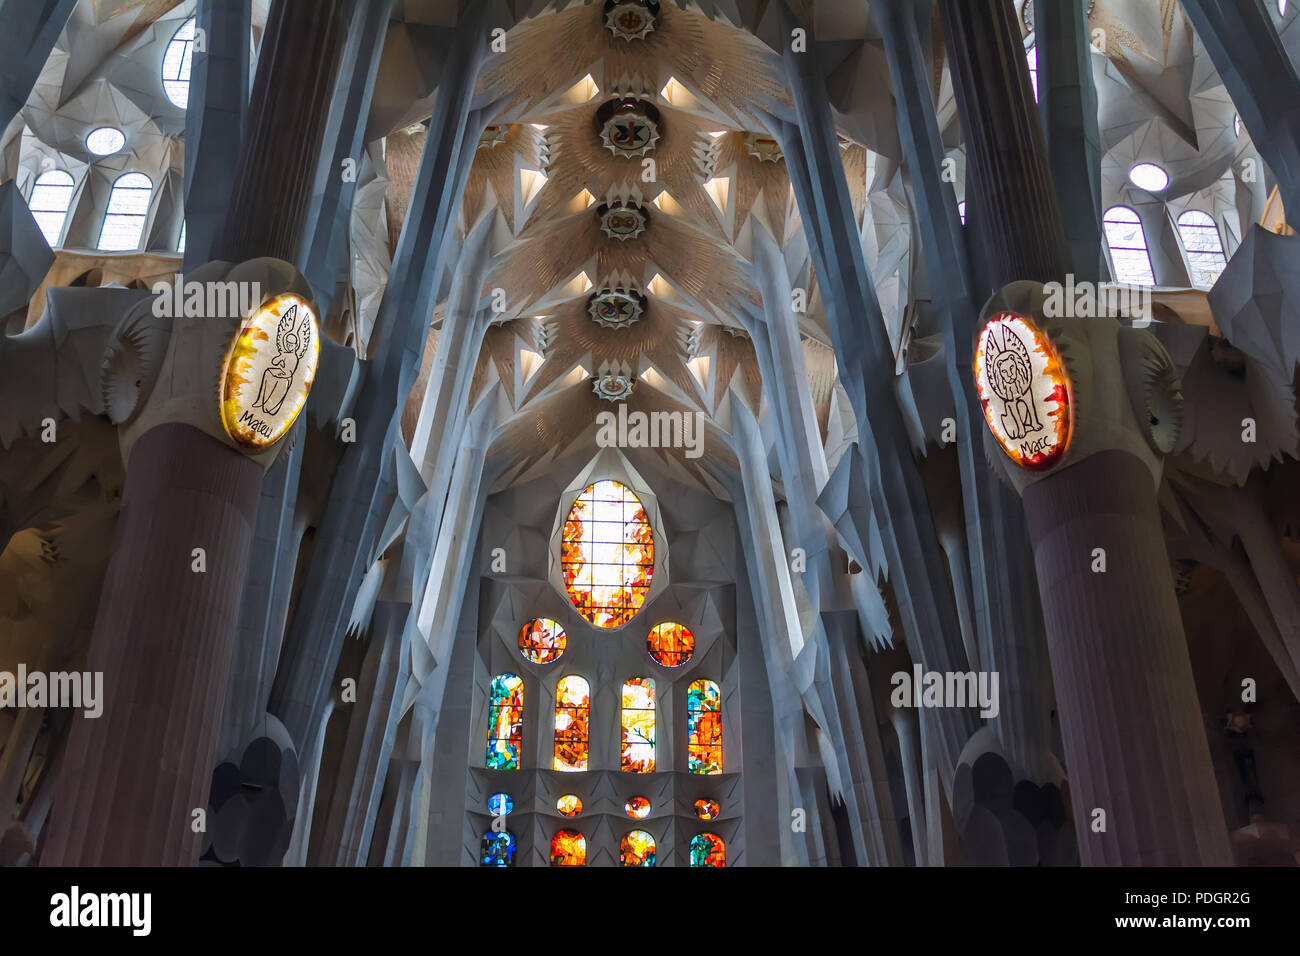 Dettagli architettonici di coloratissimi vetrata, soffitto e luci su colonne all'interno della Sagrada Familia - grande incompiuta Chiesa Cattolica Romana Foto Stock